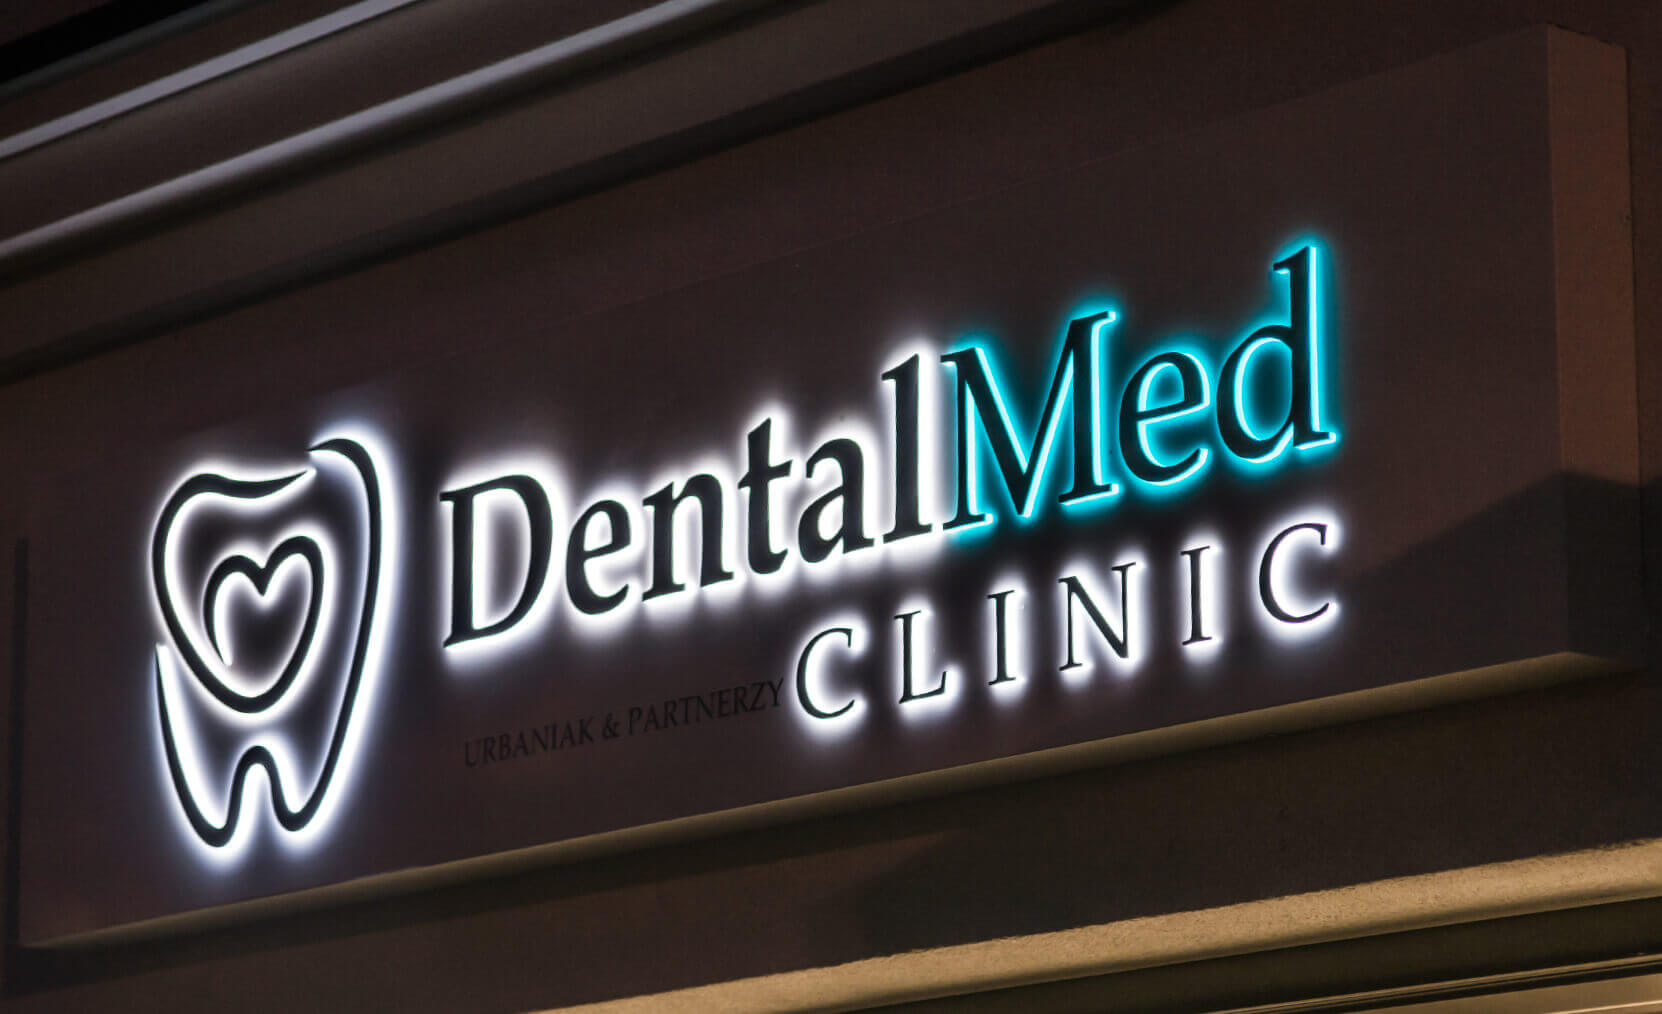 DentalMed - DentalMed - Lettres spatiales sur un coffret publicitaire au-dessus d'une entrée